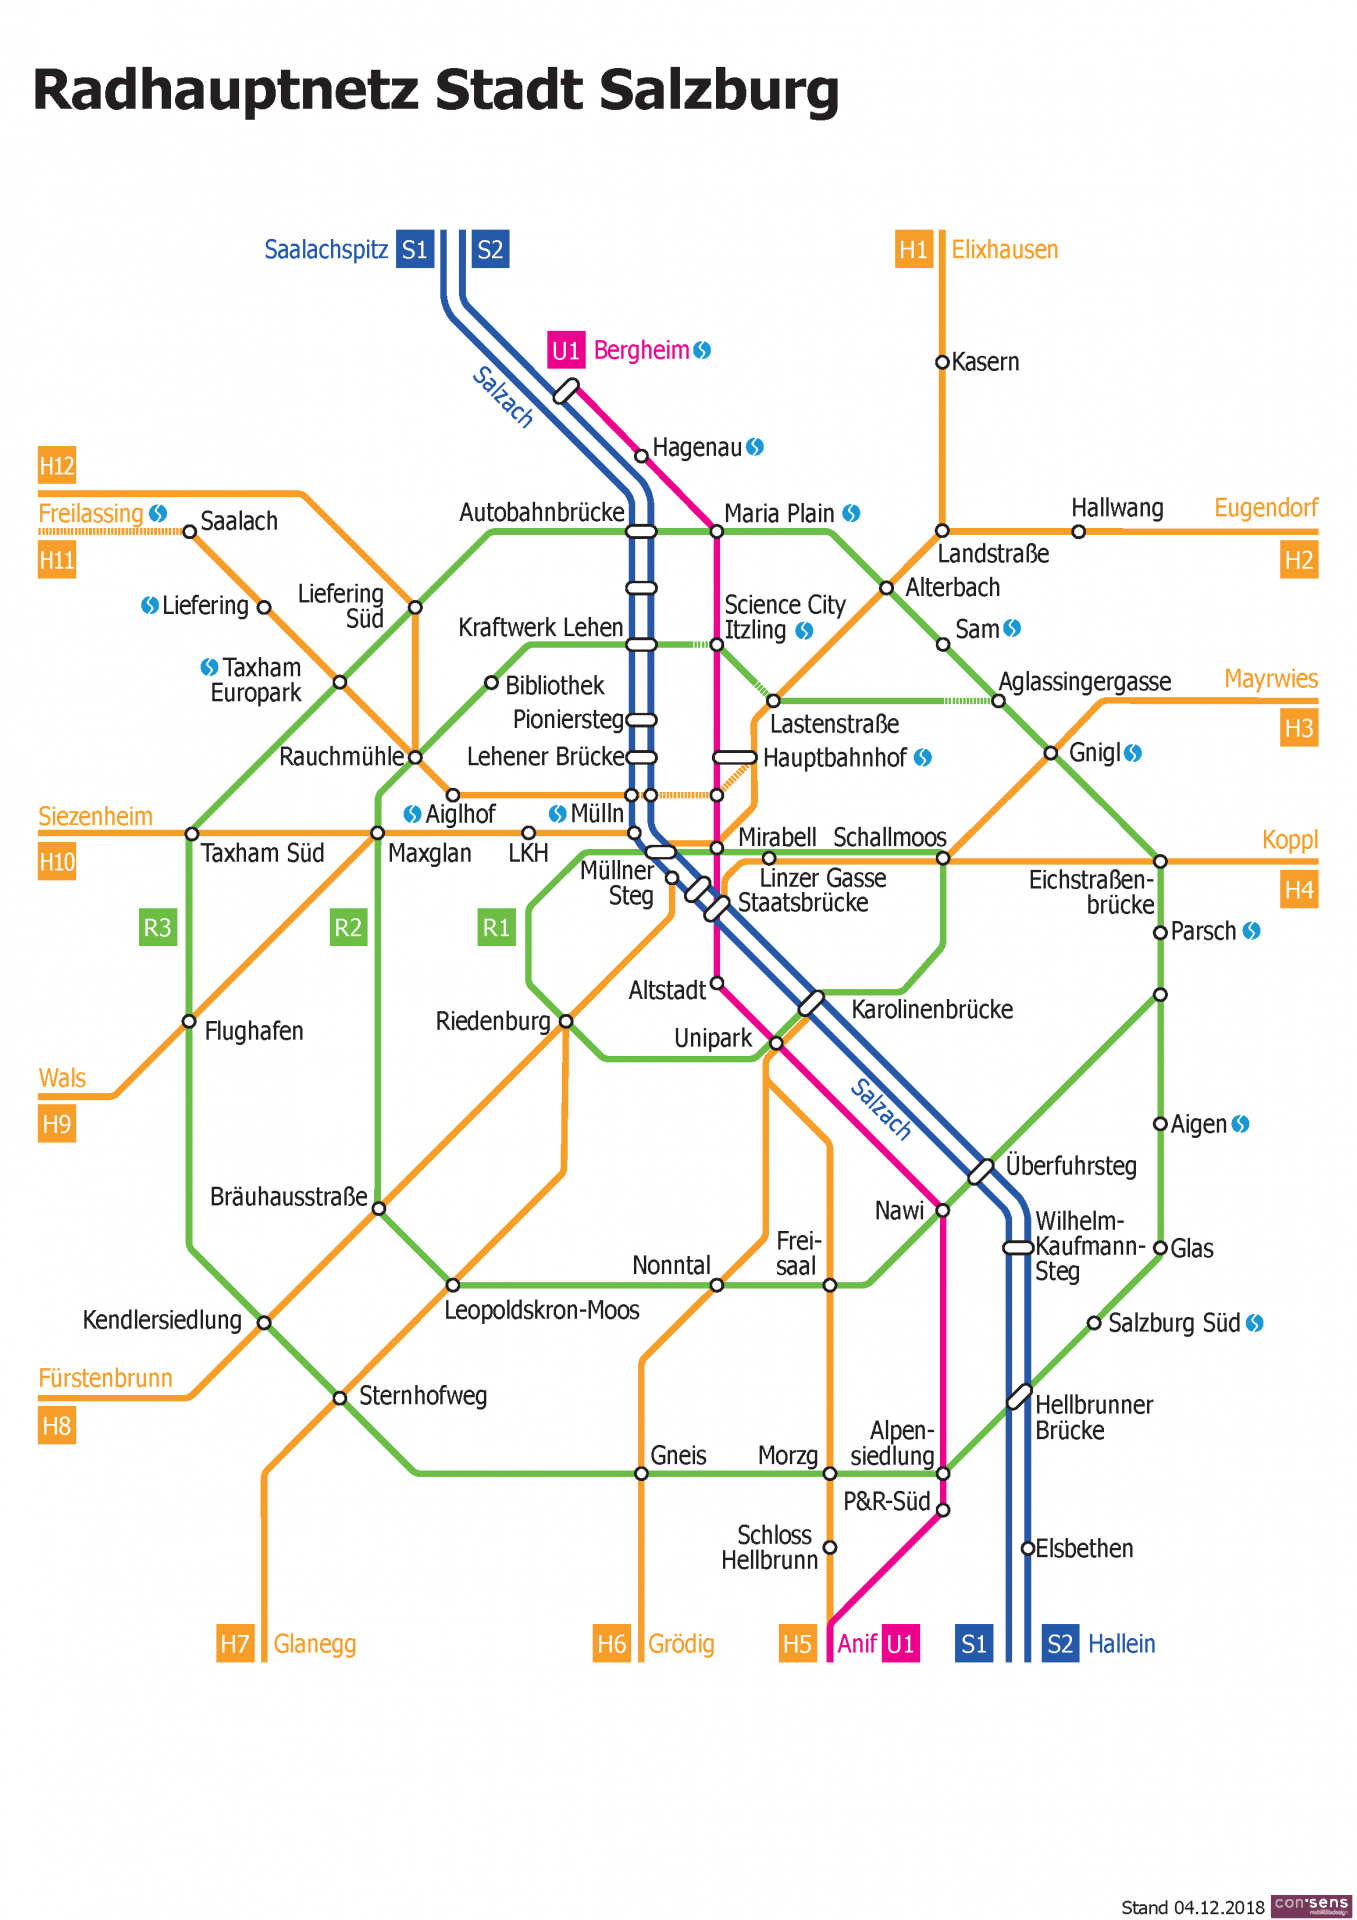 Radhauptnetz der Stadt Salzburg